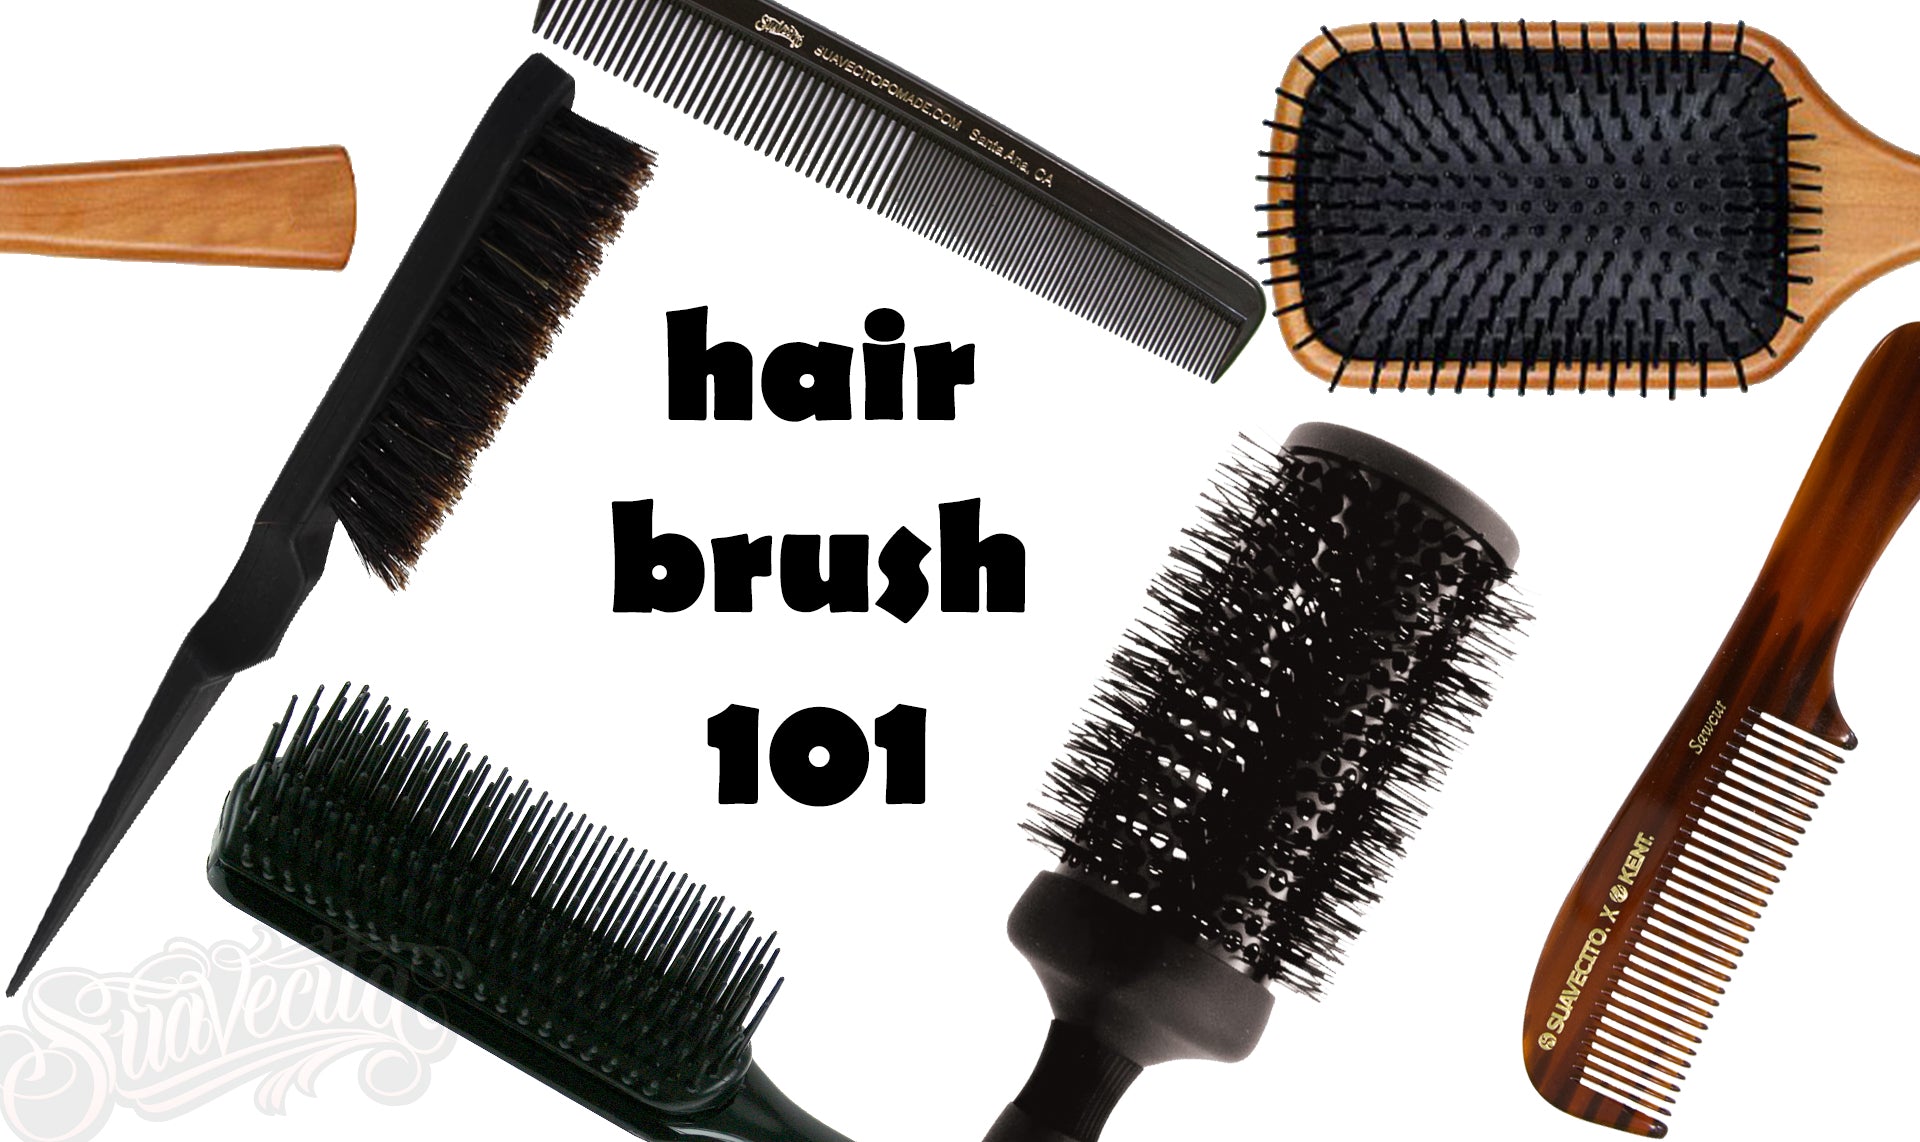 Suavecita Hair Brush 101